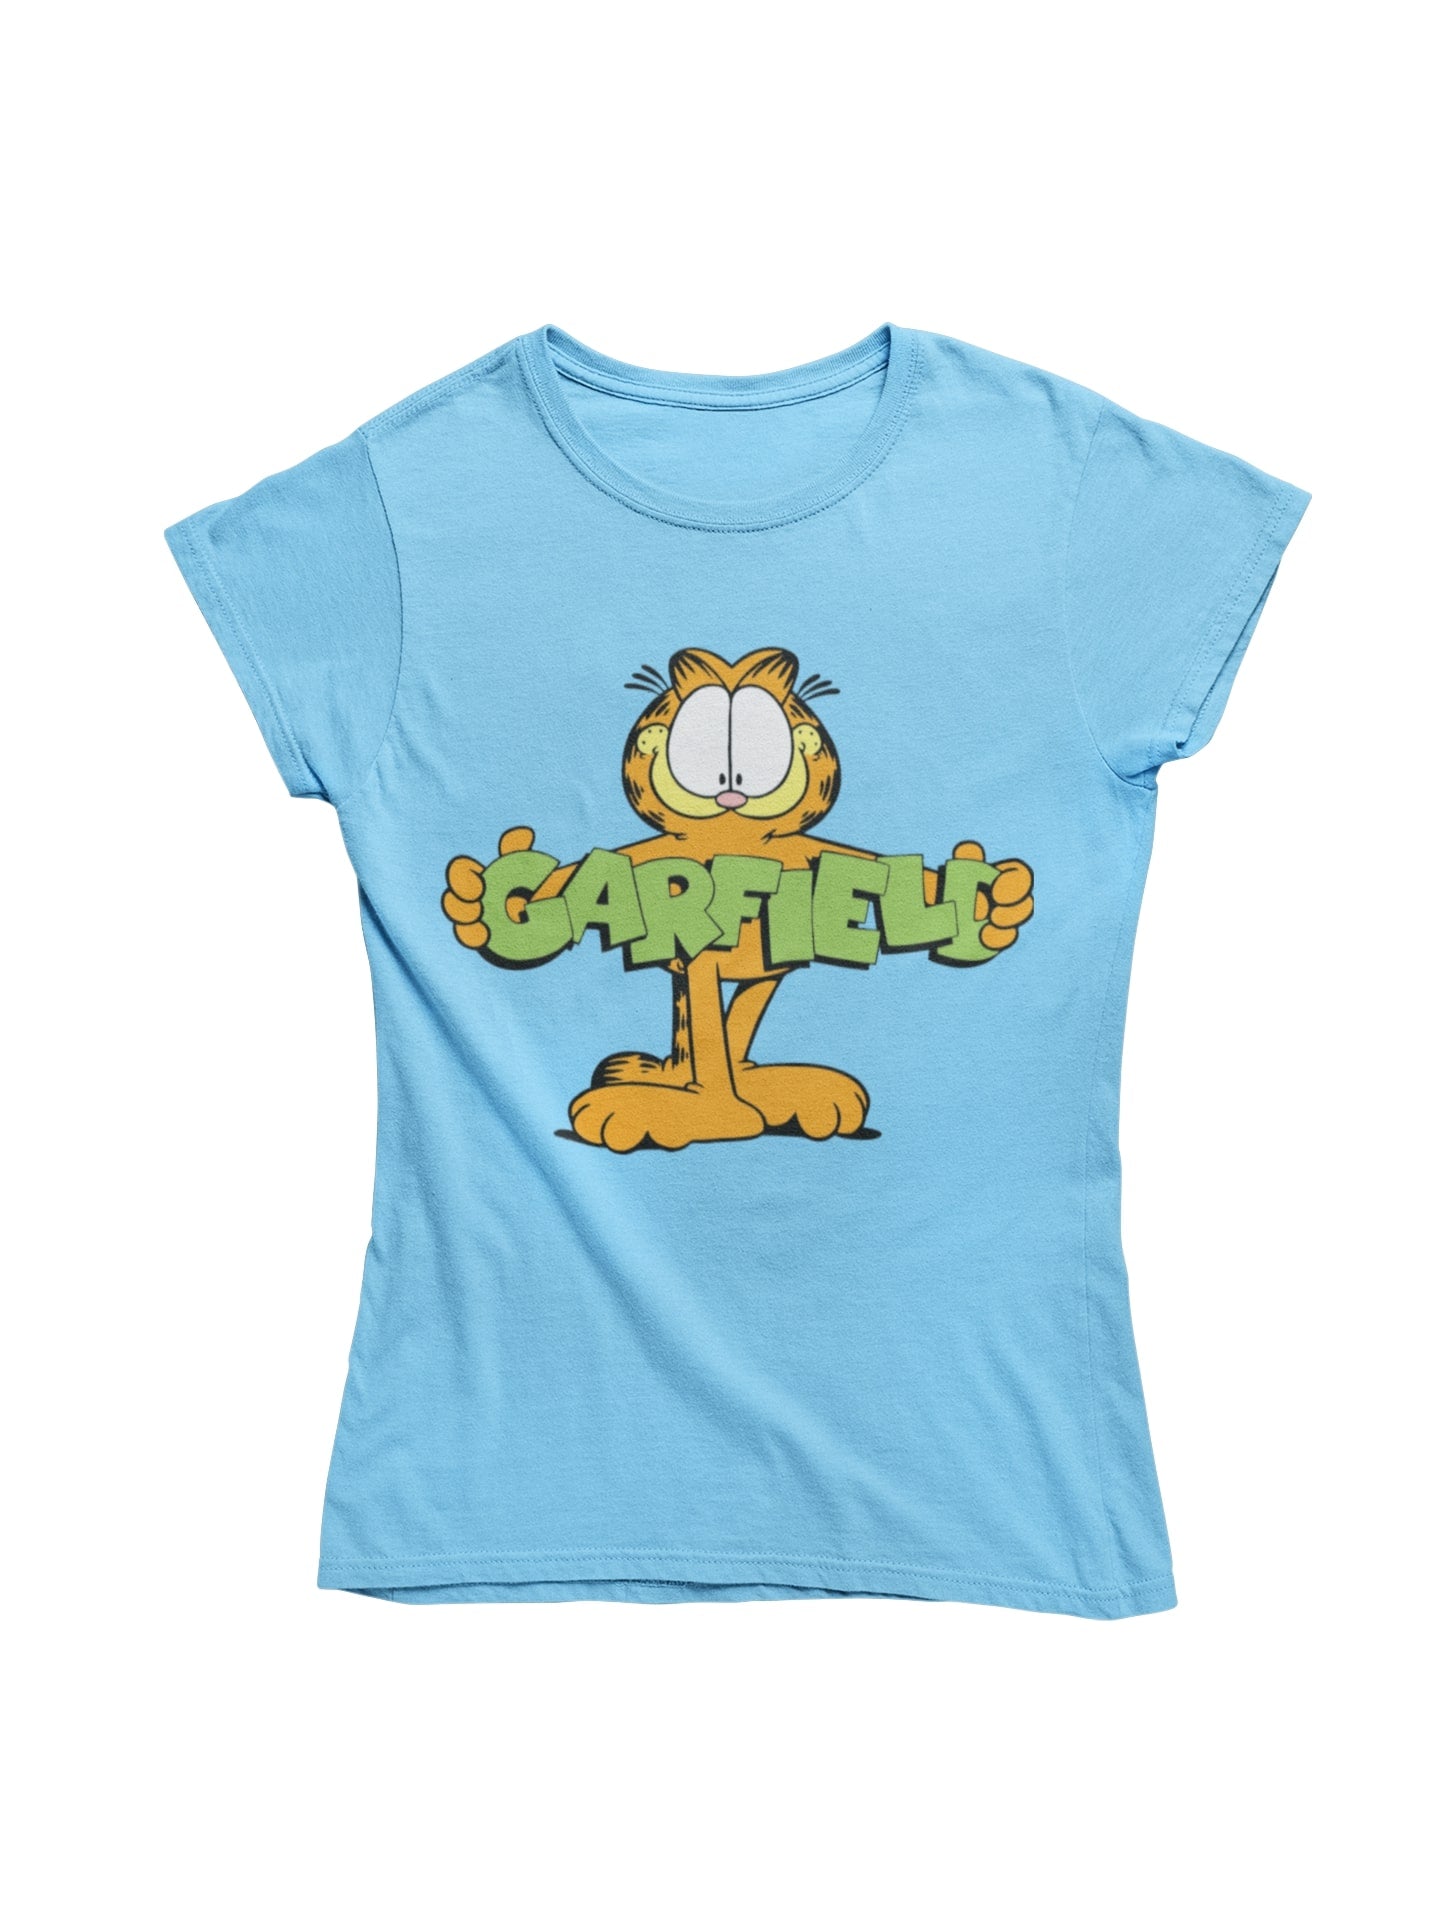 thelegalgang,Garfield-Holding logo-T shirt for Women,WOMEN.